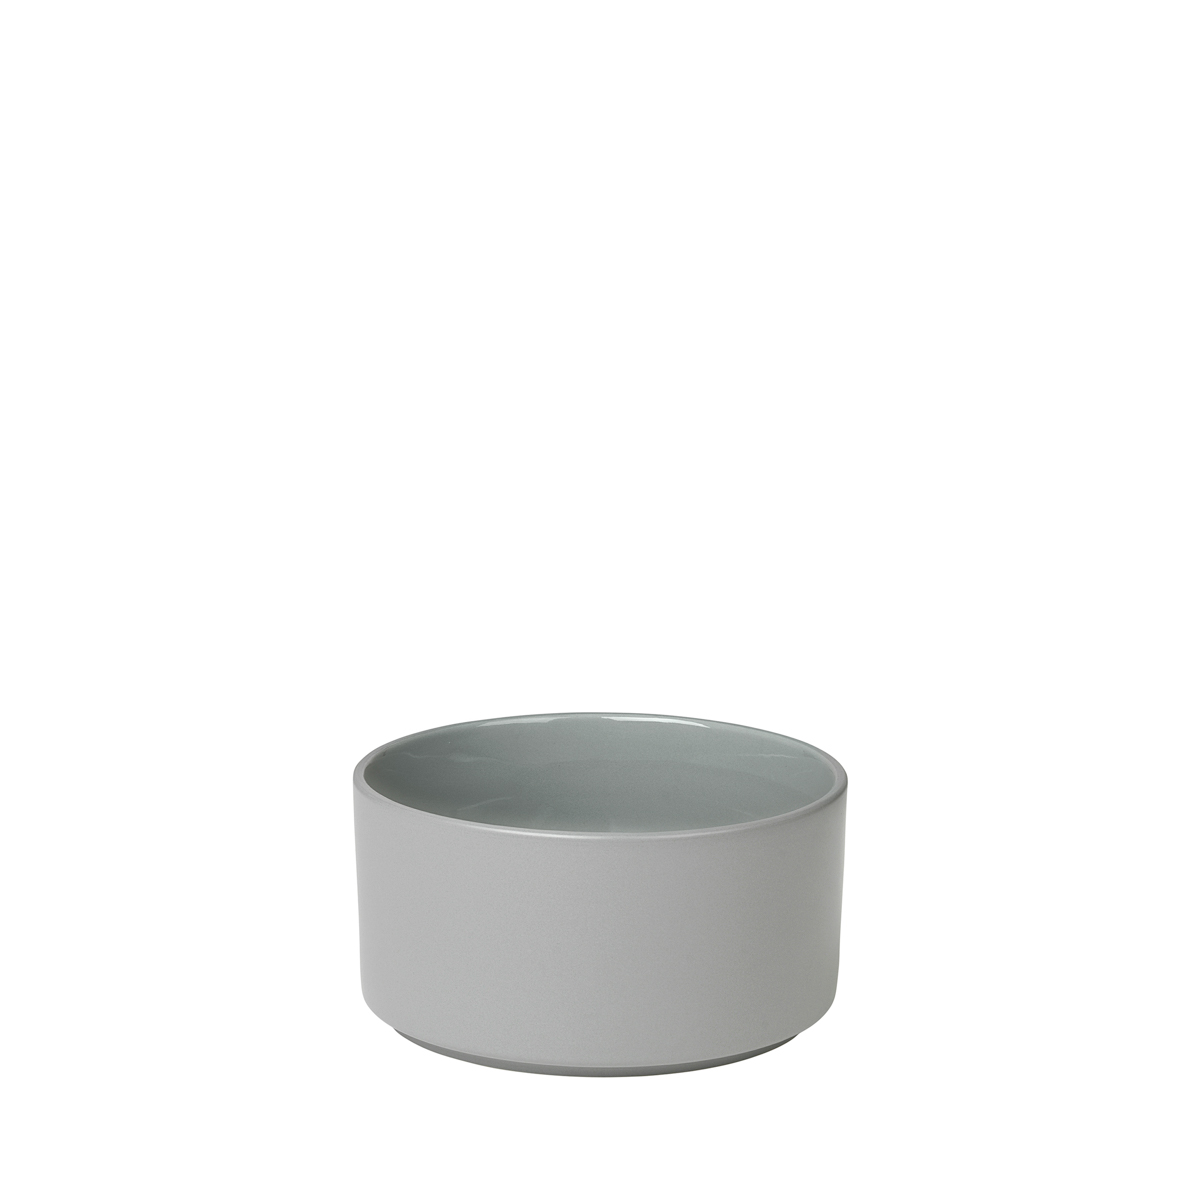 Schale -PILAR- Mirage Gray, Ø 11. Material: Keramik. Von Blomus.